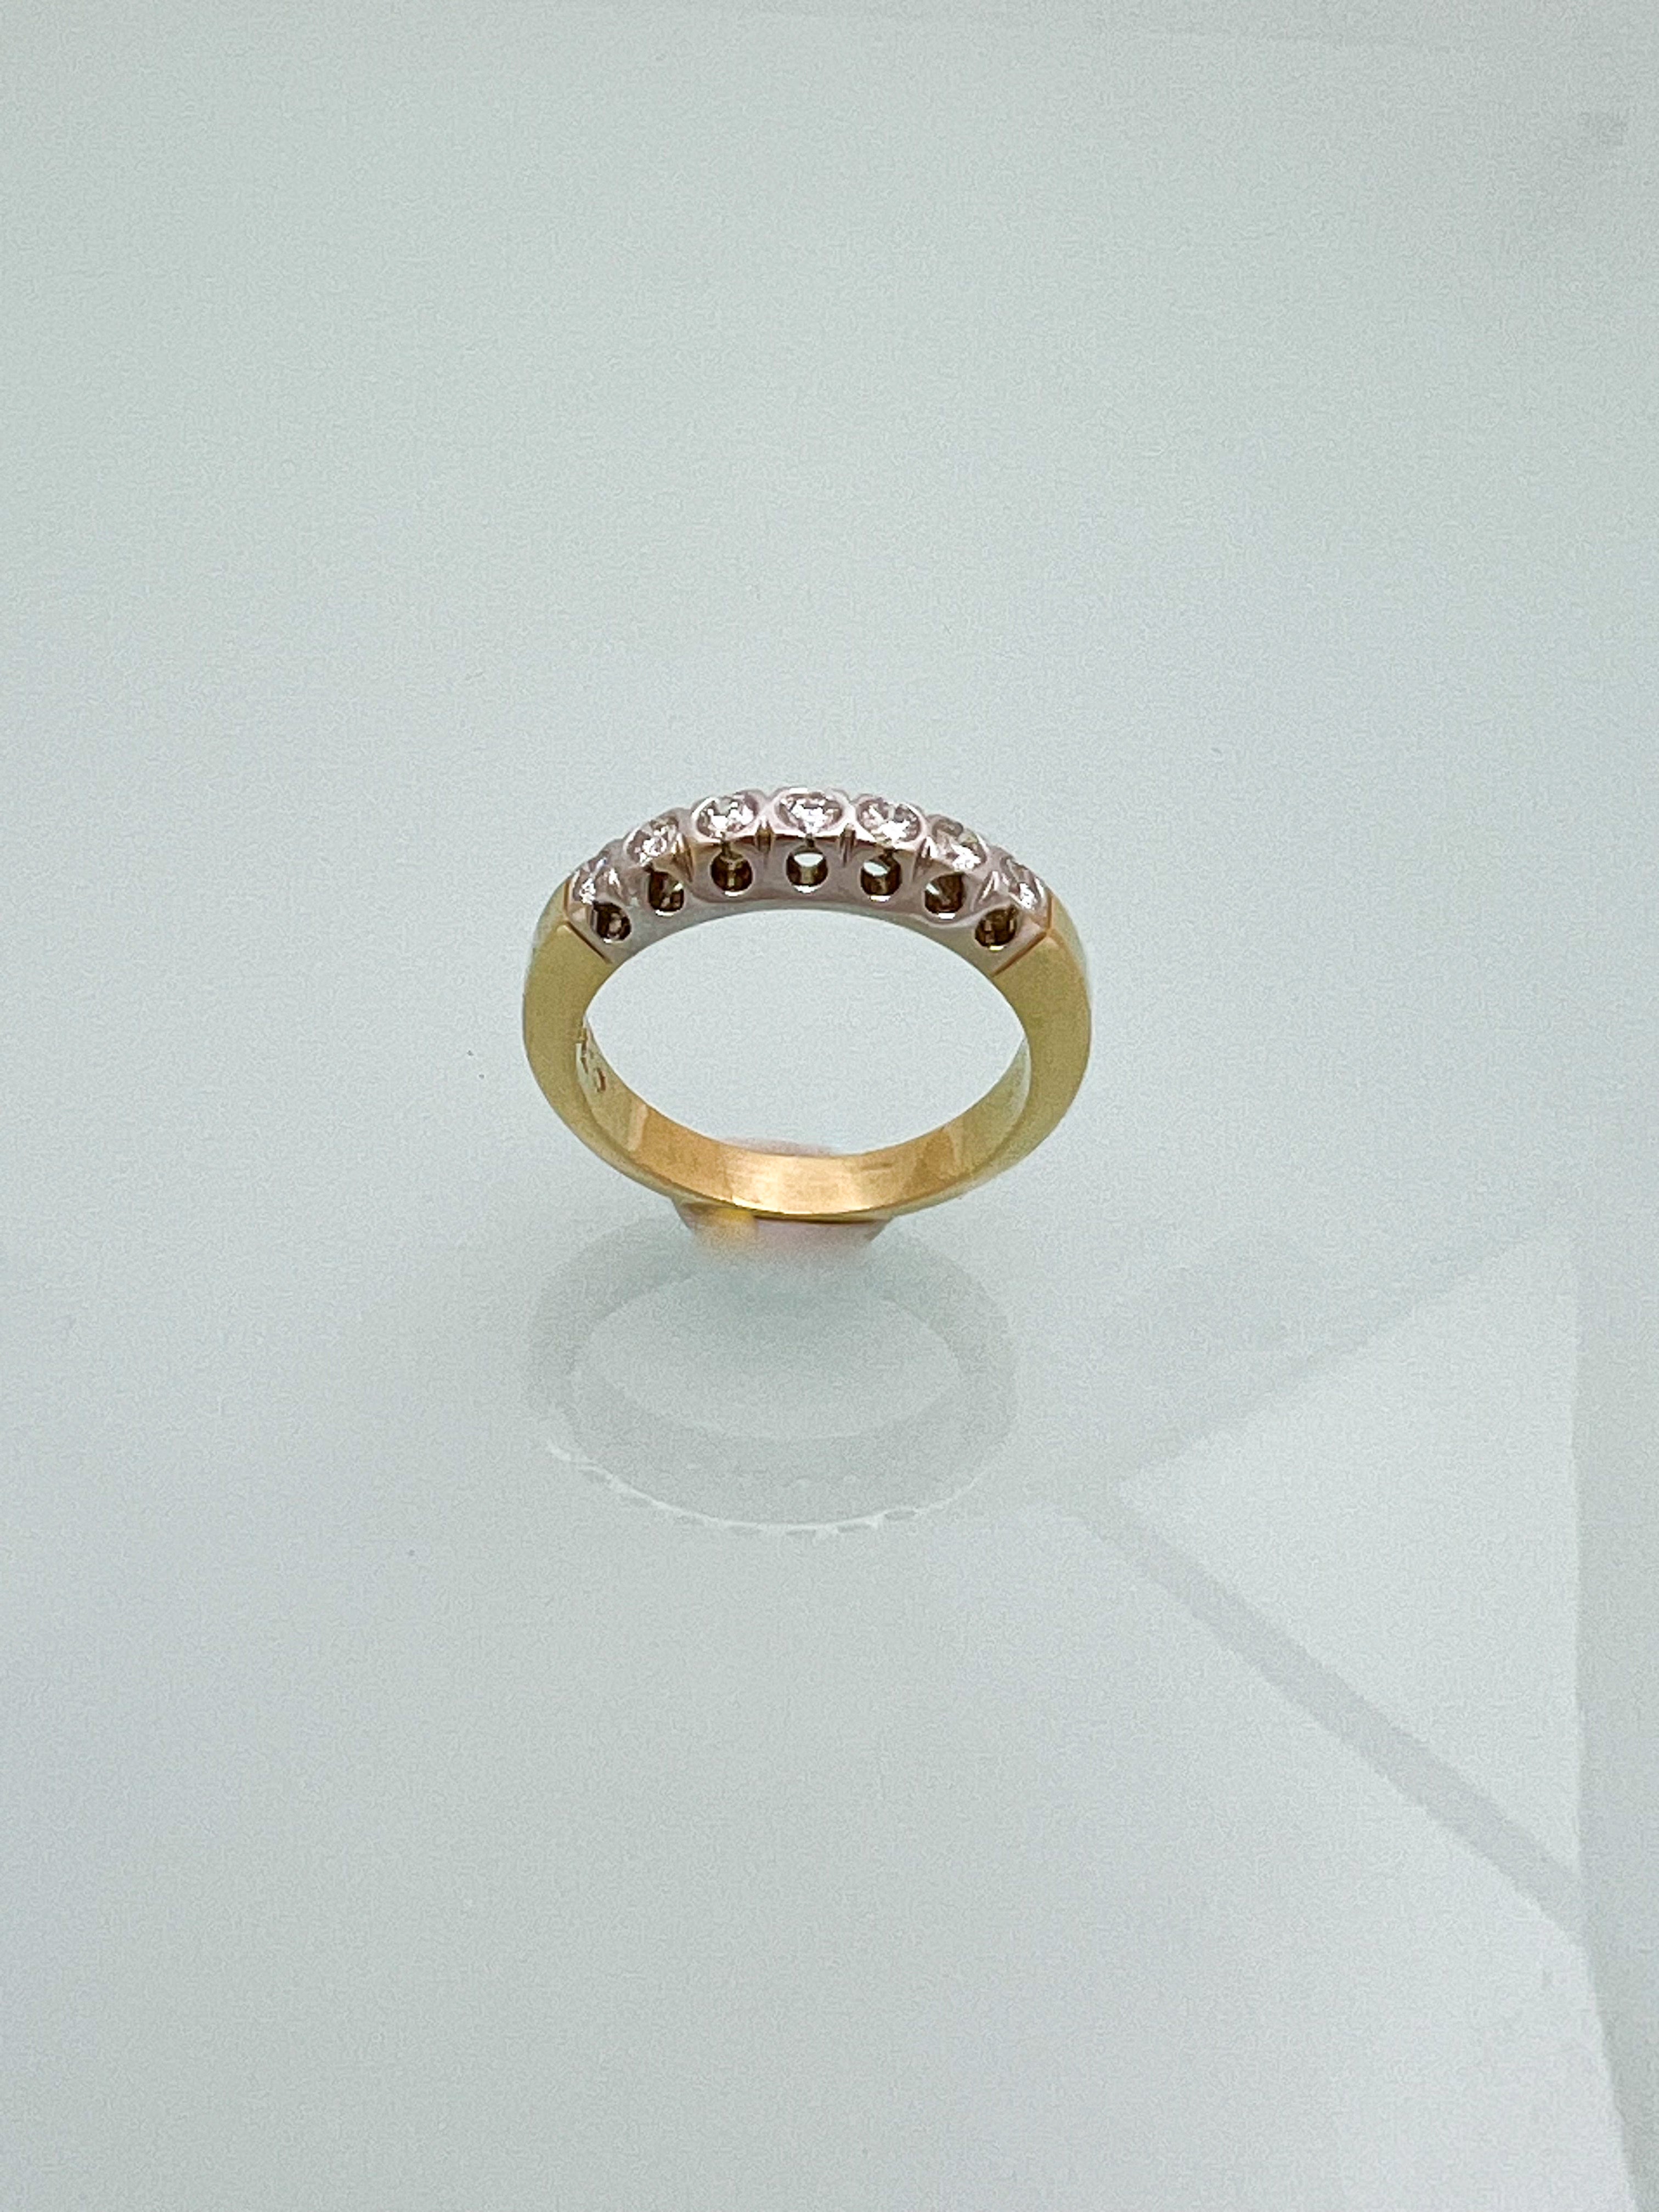 טבעת 18 קארט משולבת זהב צהוב ולבן עם שיבוץ יהלומים